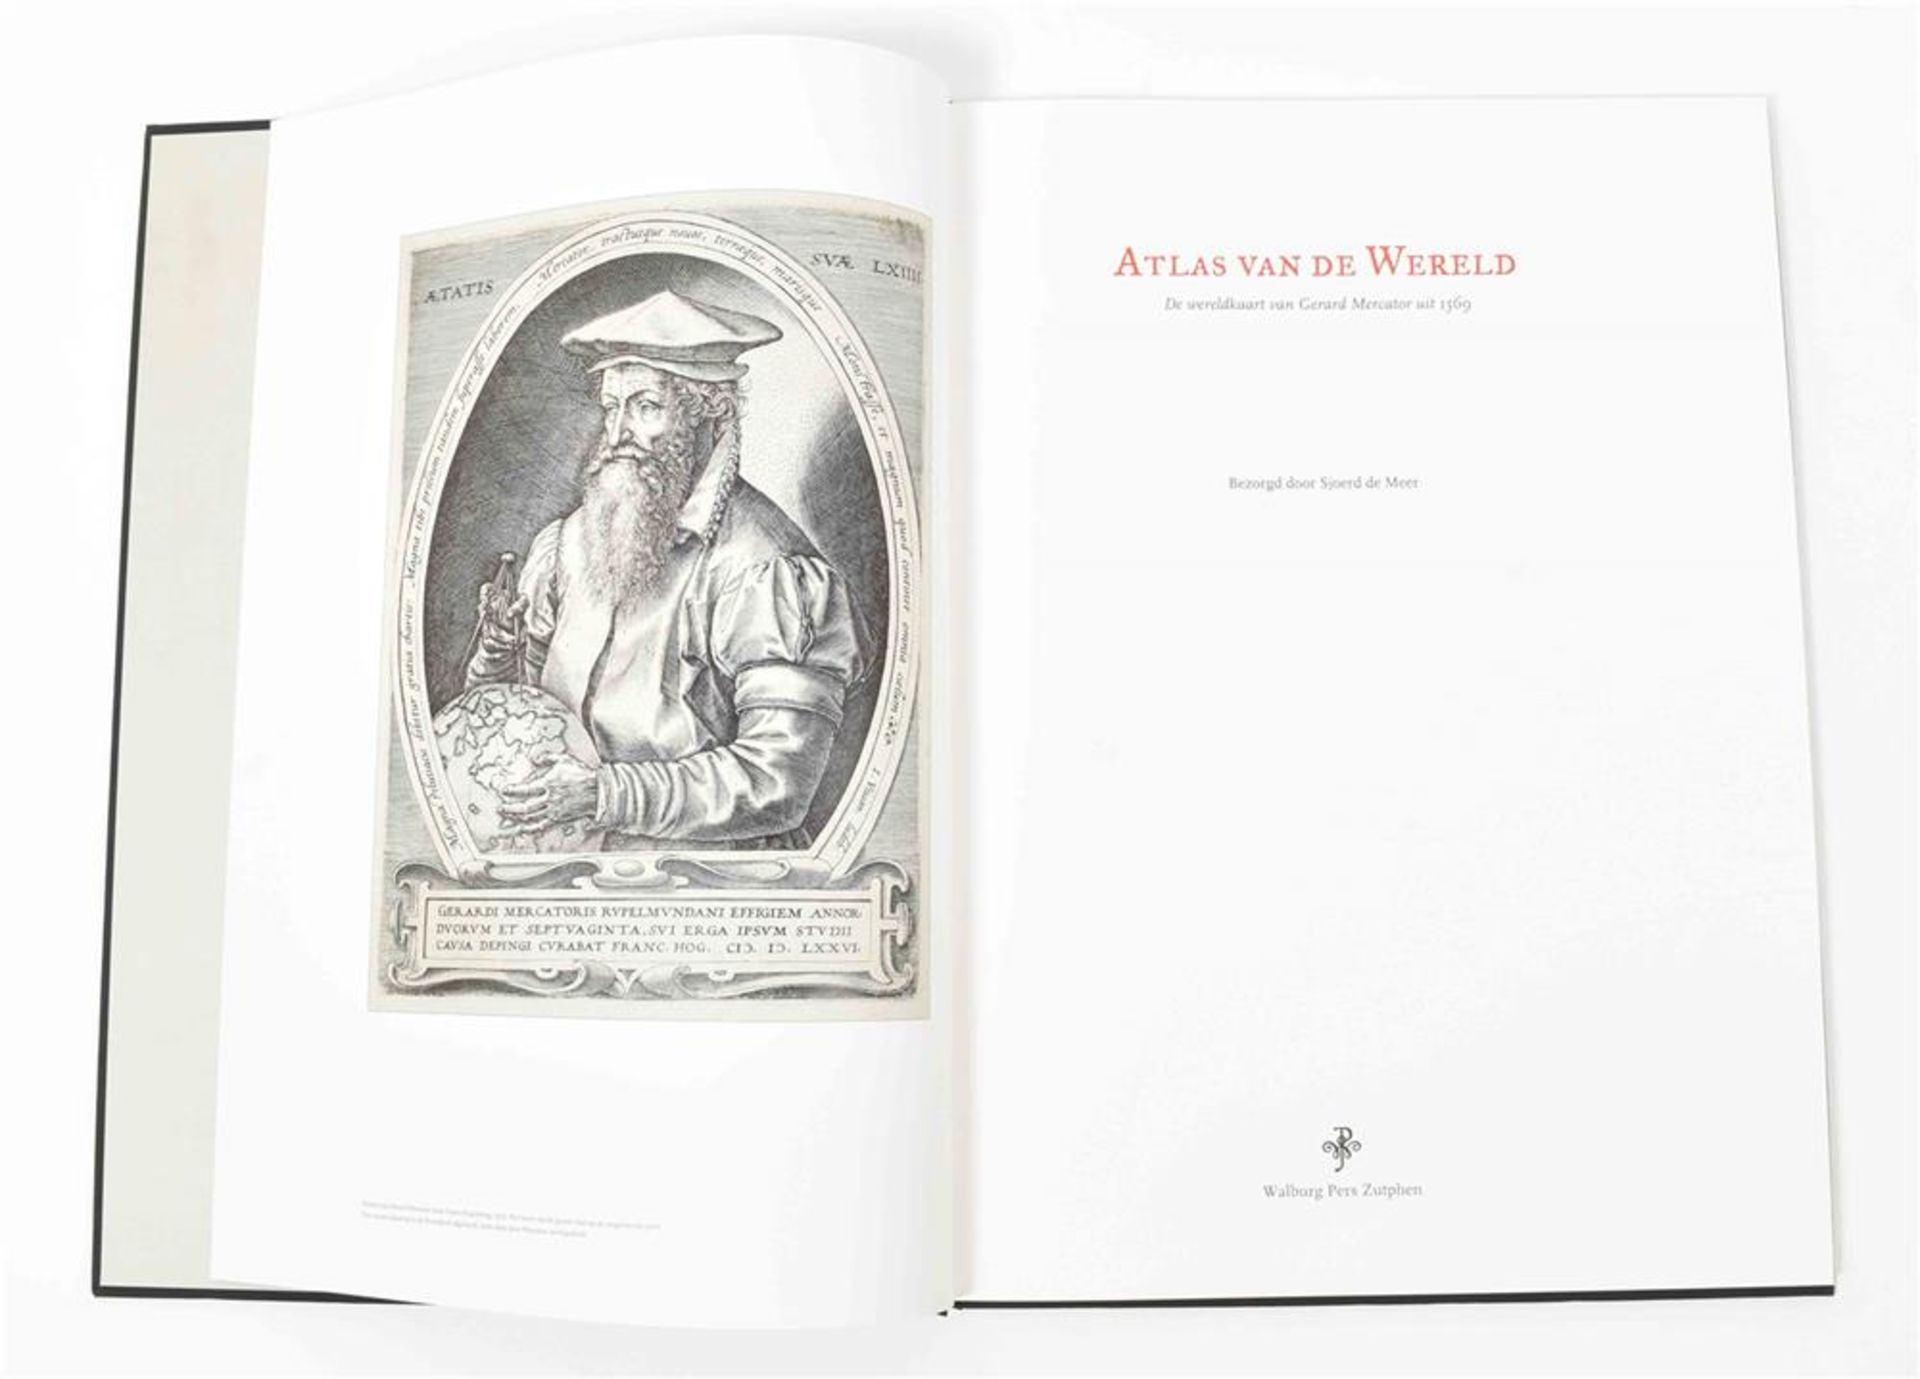 [Facsimiles] Two works: (1) Meer, S. Atlas van de wereld - Image 4 of 10